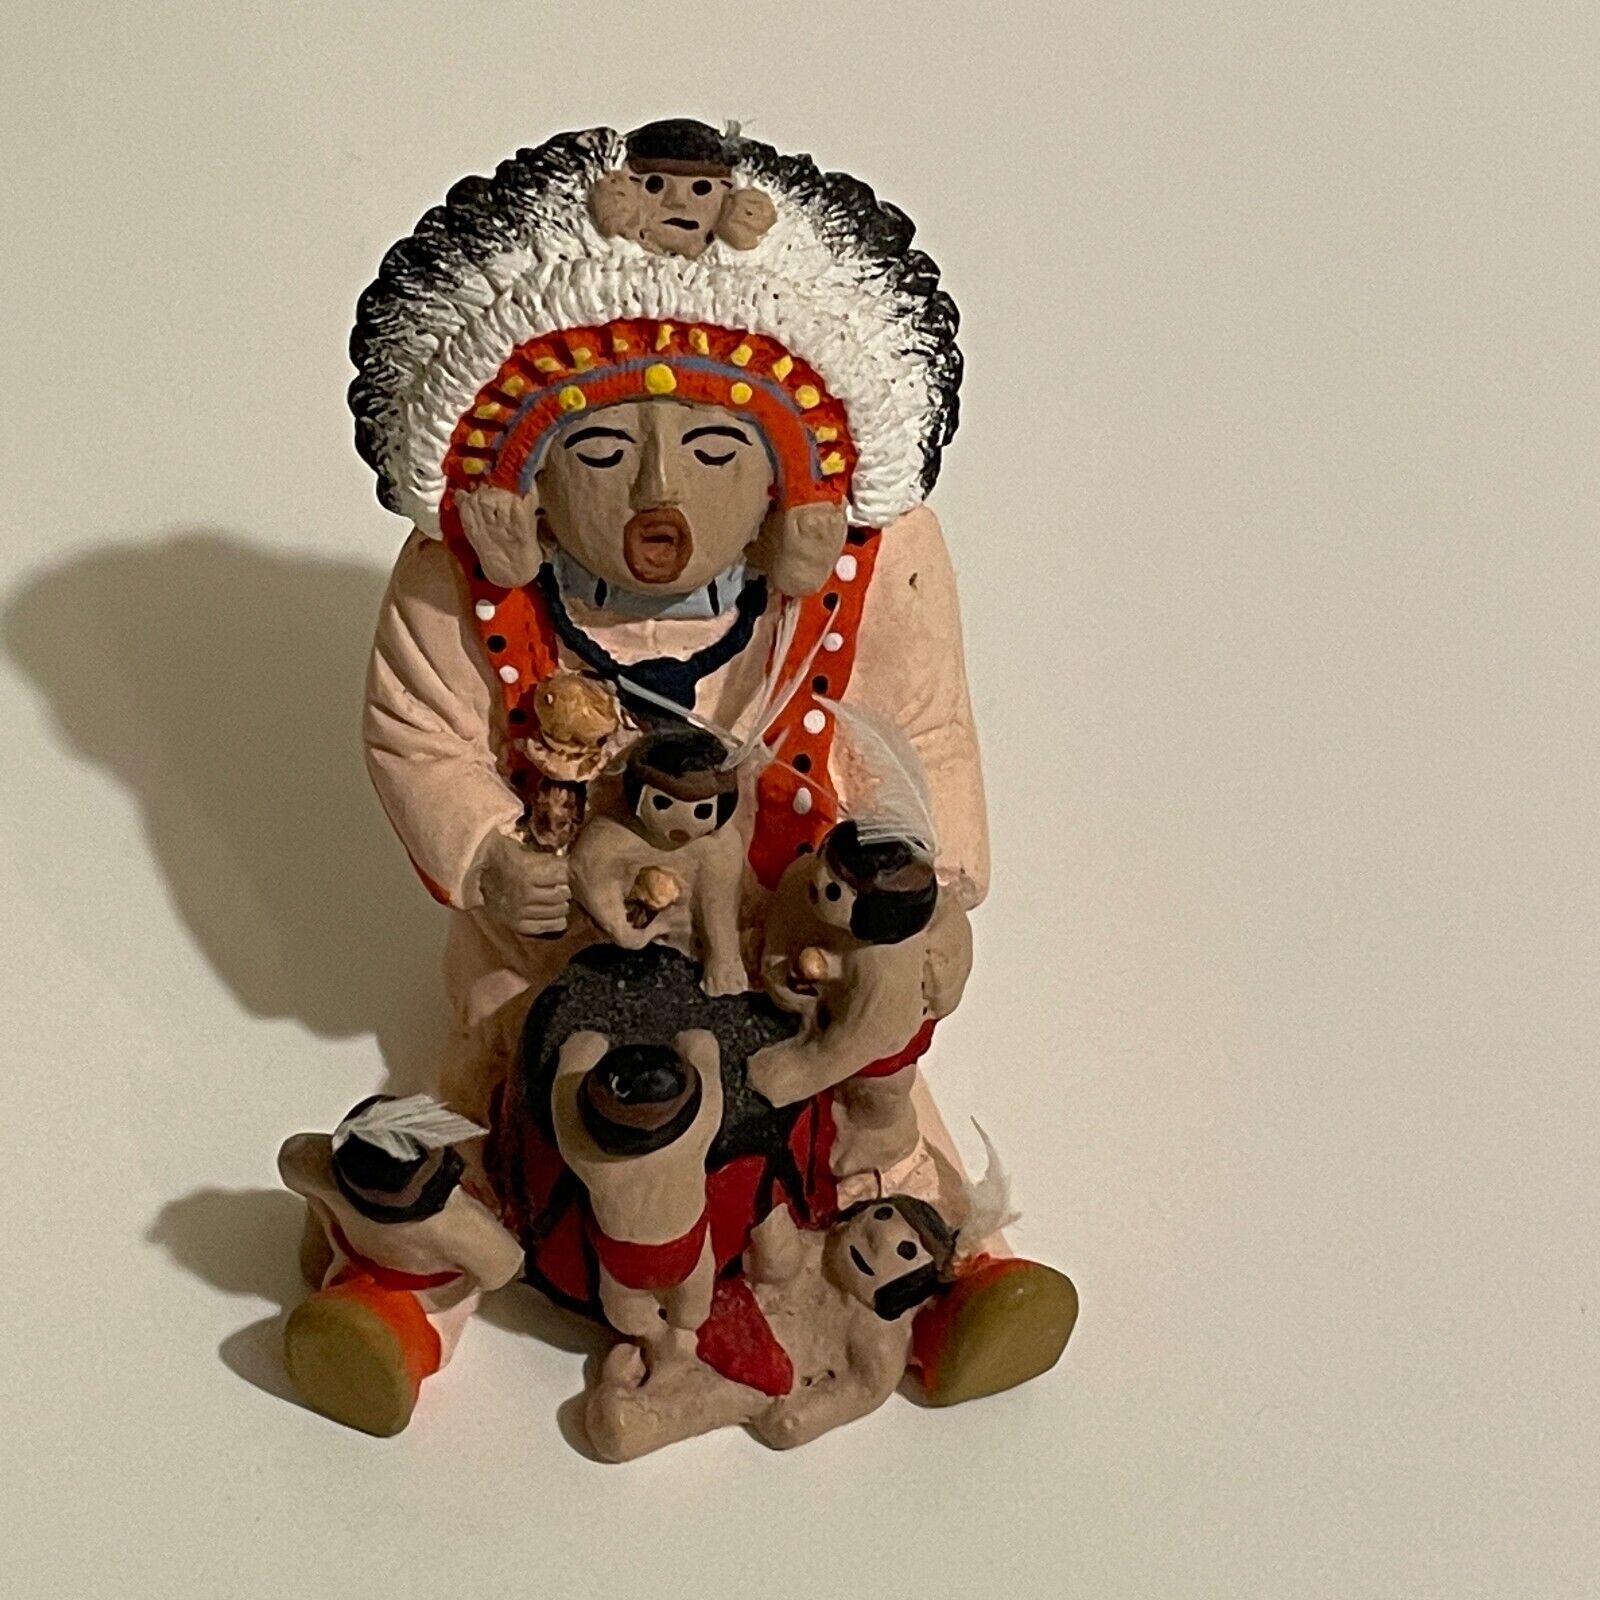 VTG Native American Chief Sitting Storyteller with Children Miniature Figurine